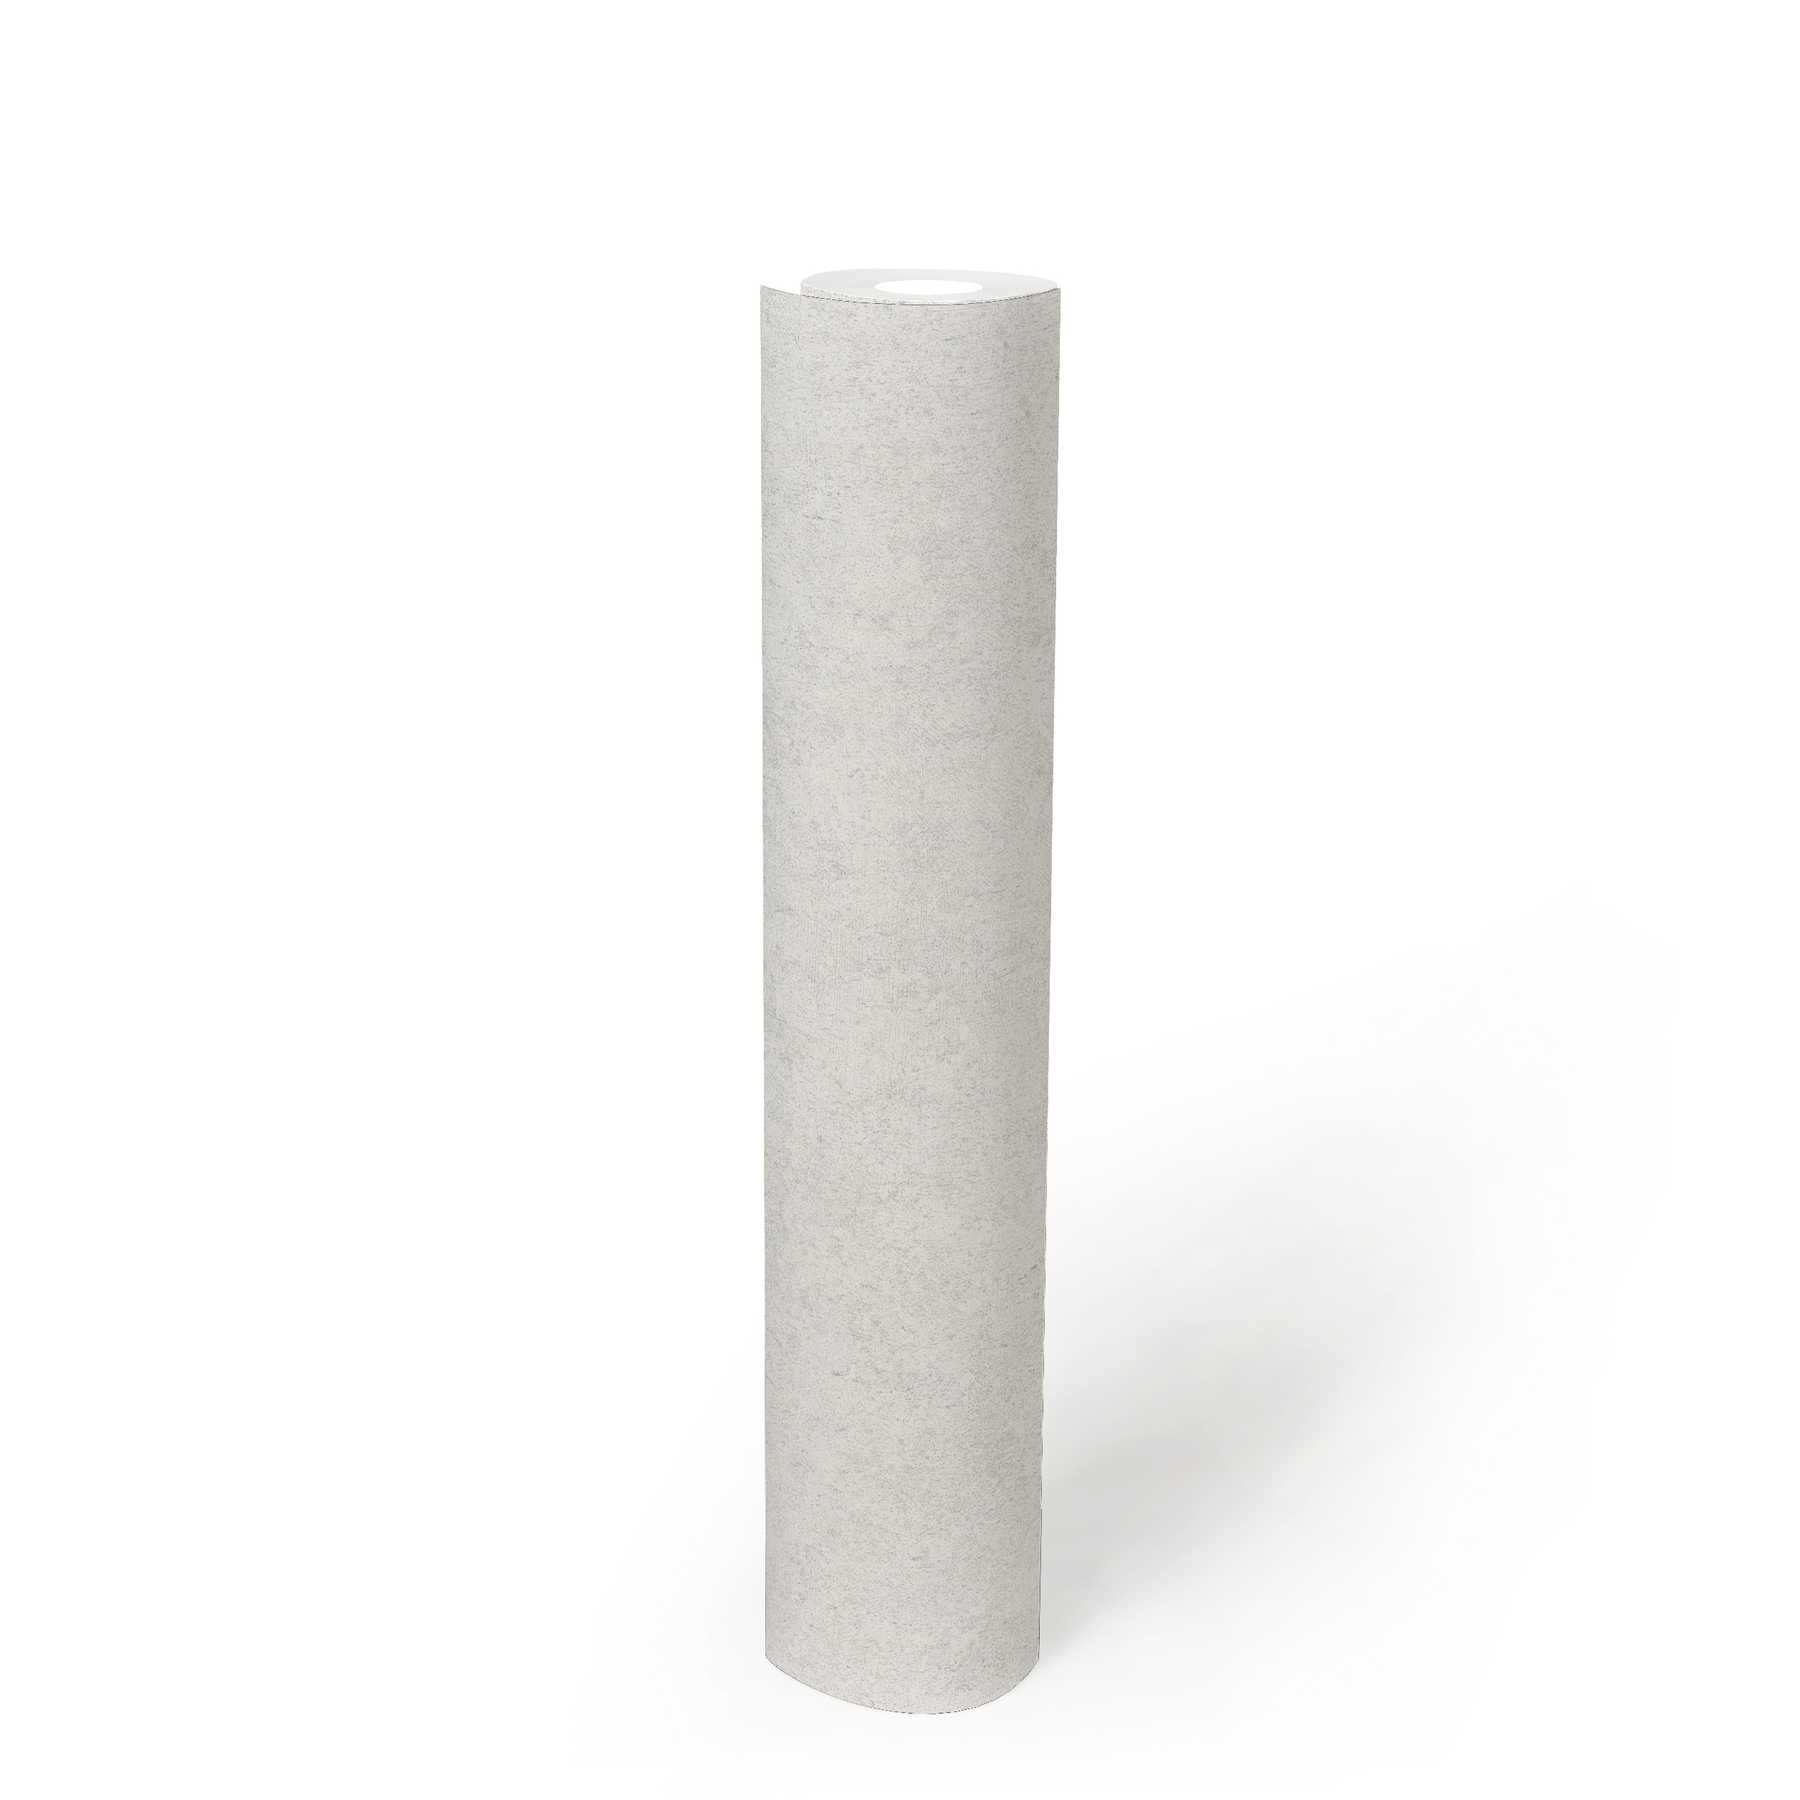             Tapete Grau Weiß mit natürlicher Steinoptik-Struktur
        